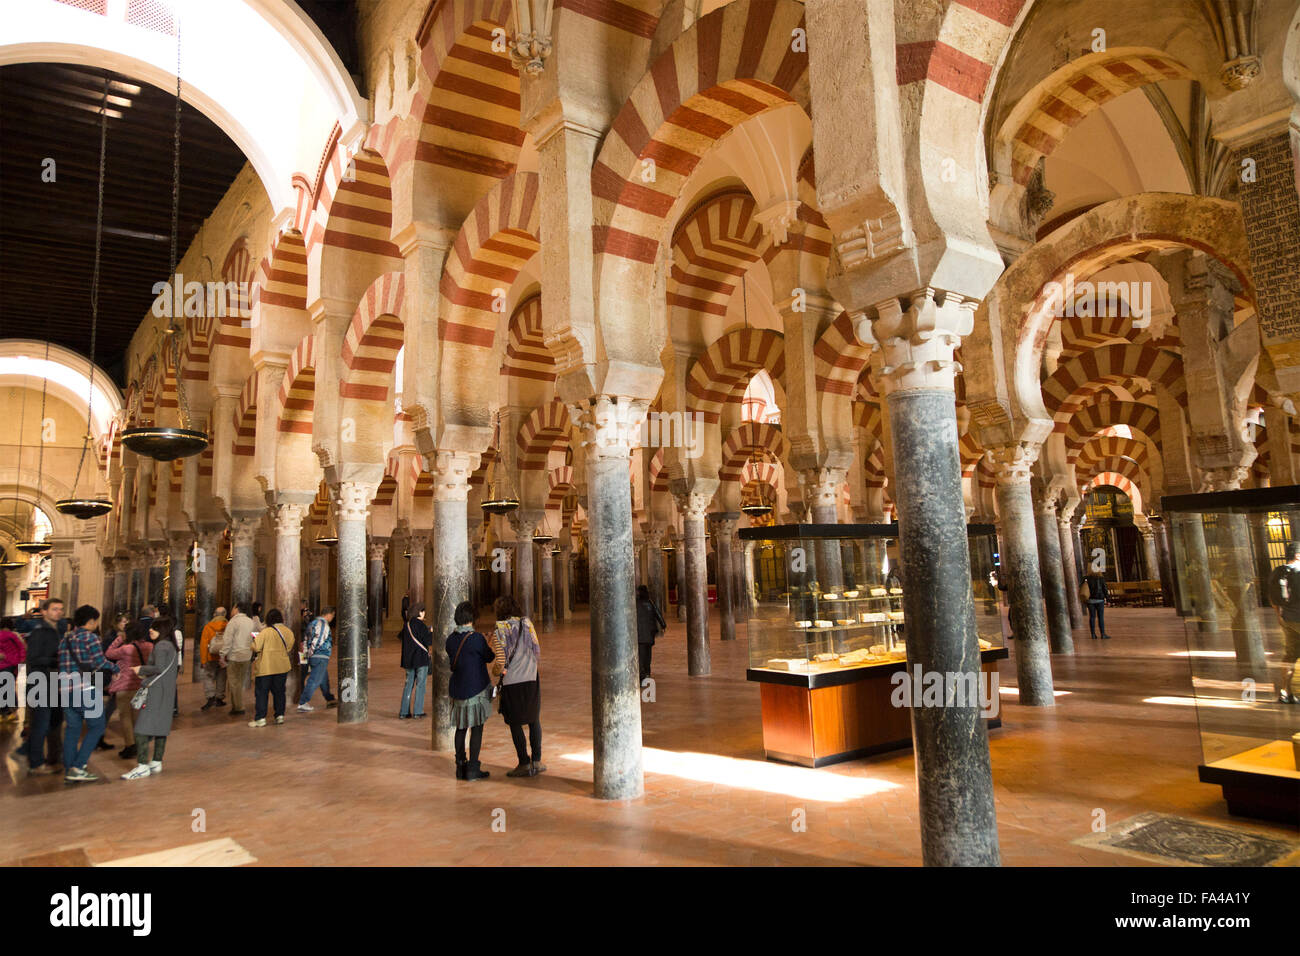 Archi moreschi nell'ex moschea cattedrale ora, Cordoba, Spagna Foto Stock